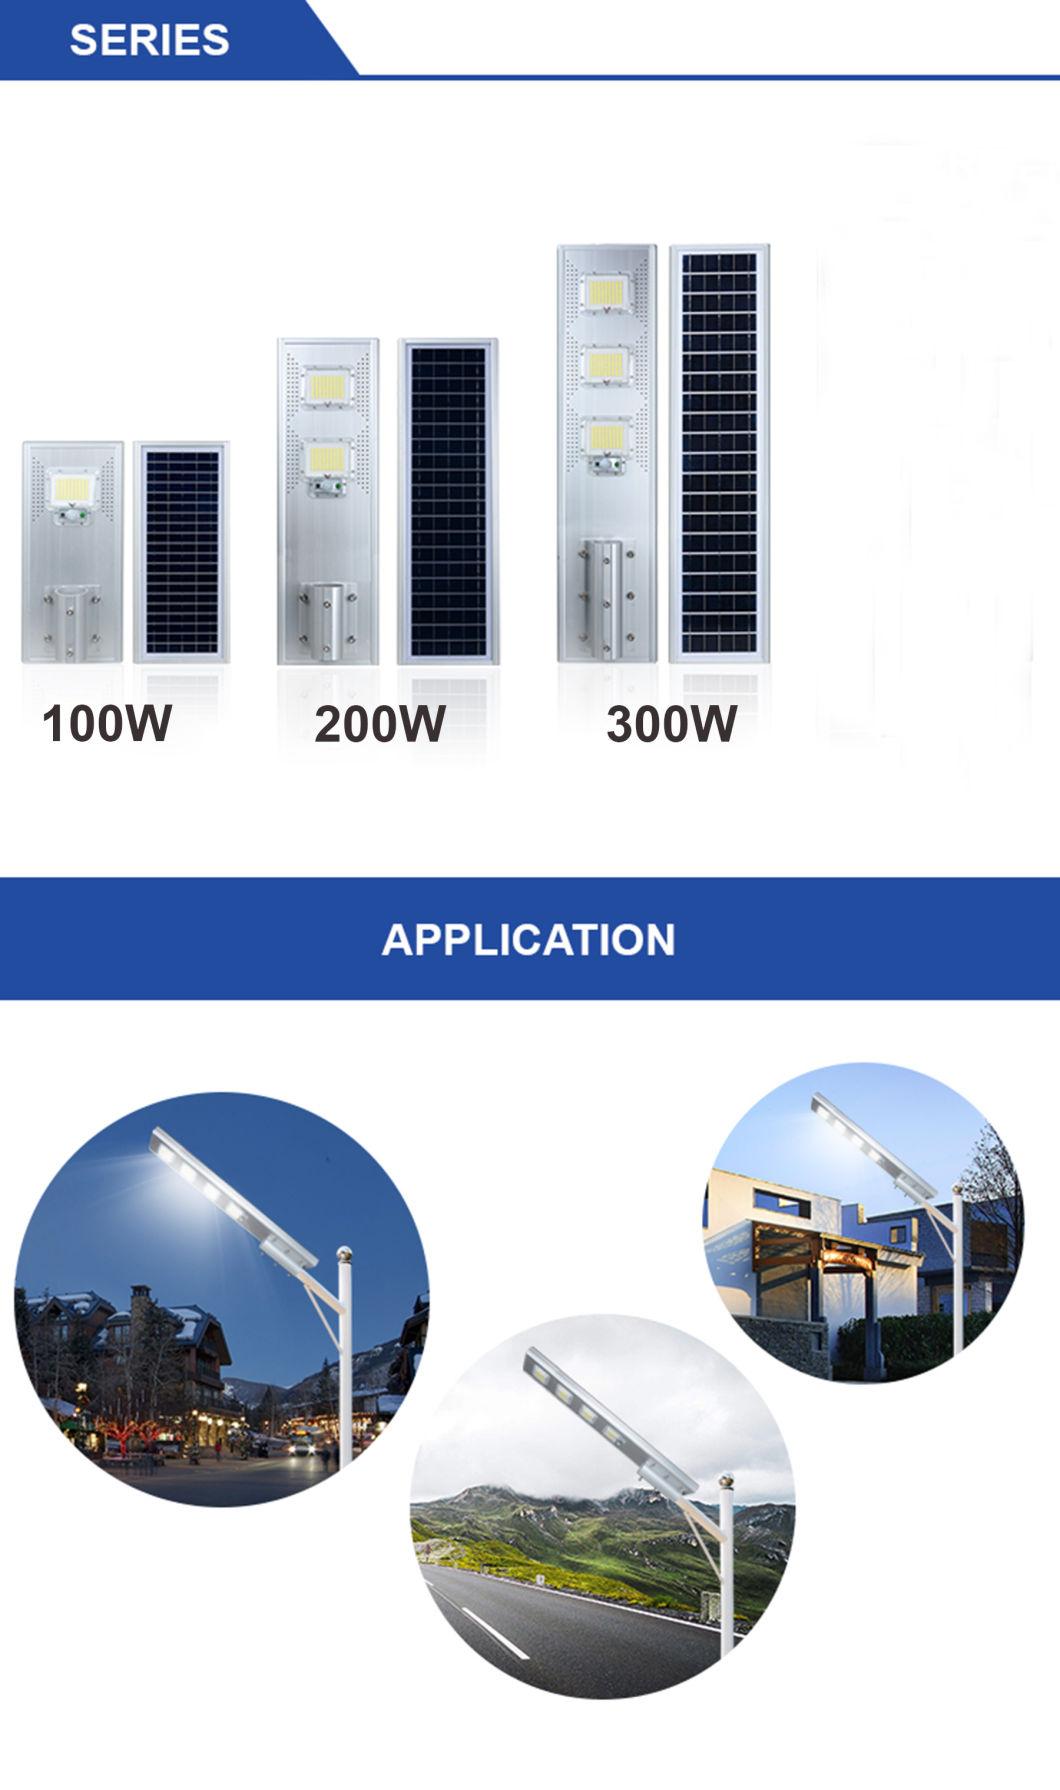 Factory Price Solar Panel Street Lighting Mono Crystalline 6V 35W 6500K All in One Solar Street Light